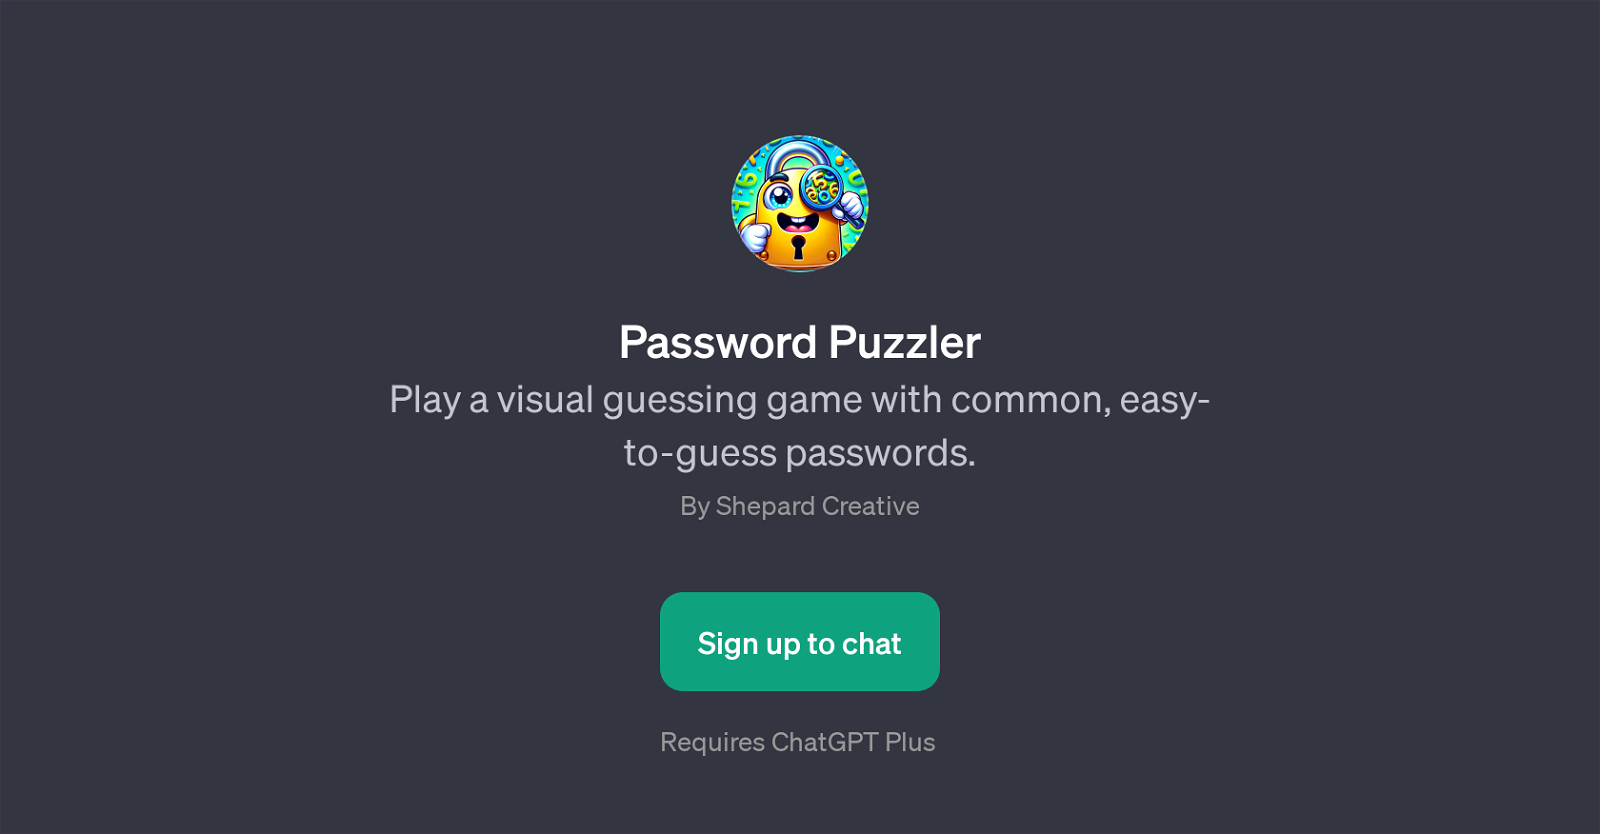 Password Puzzler website